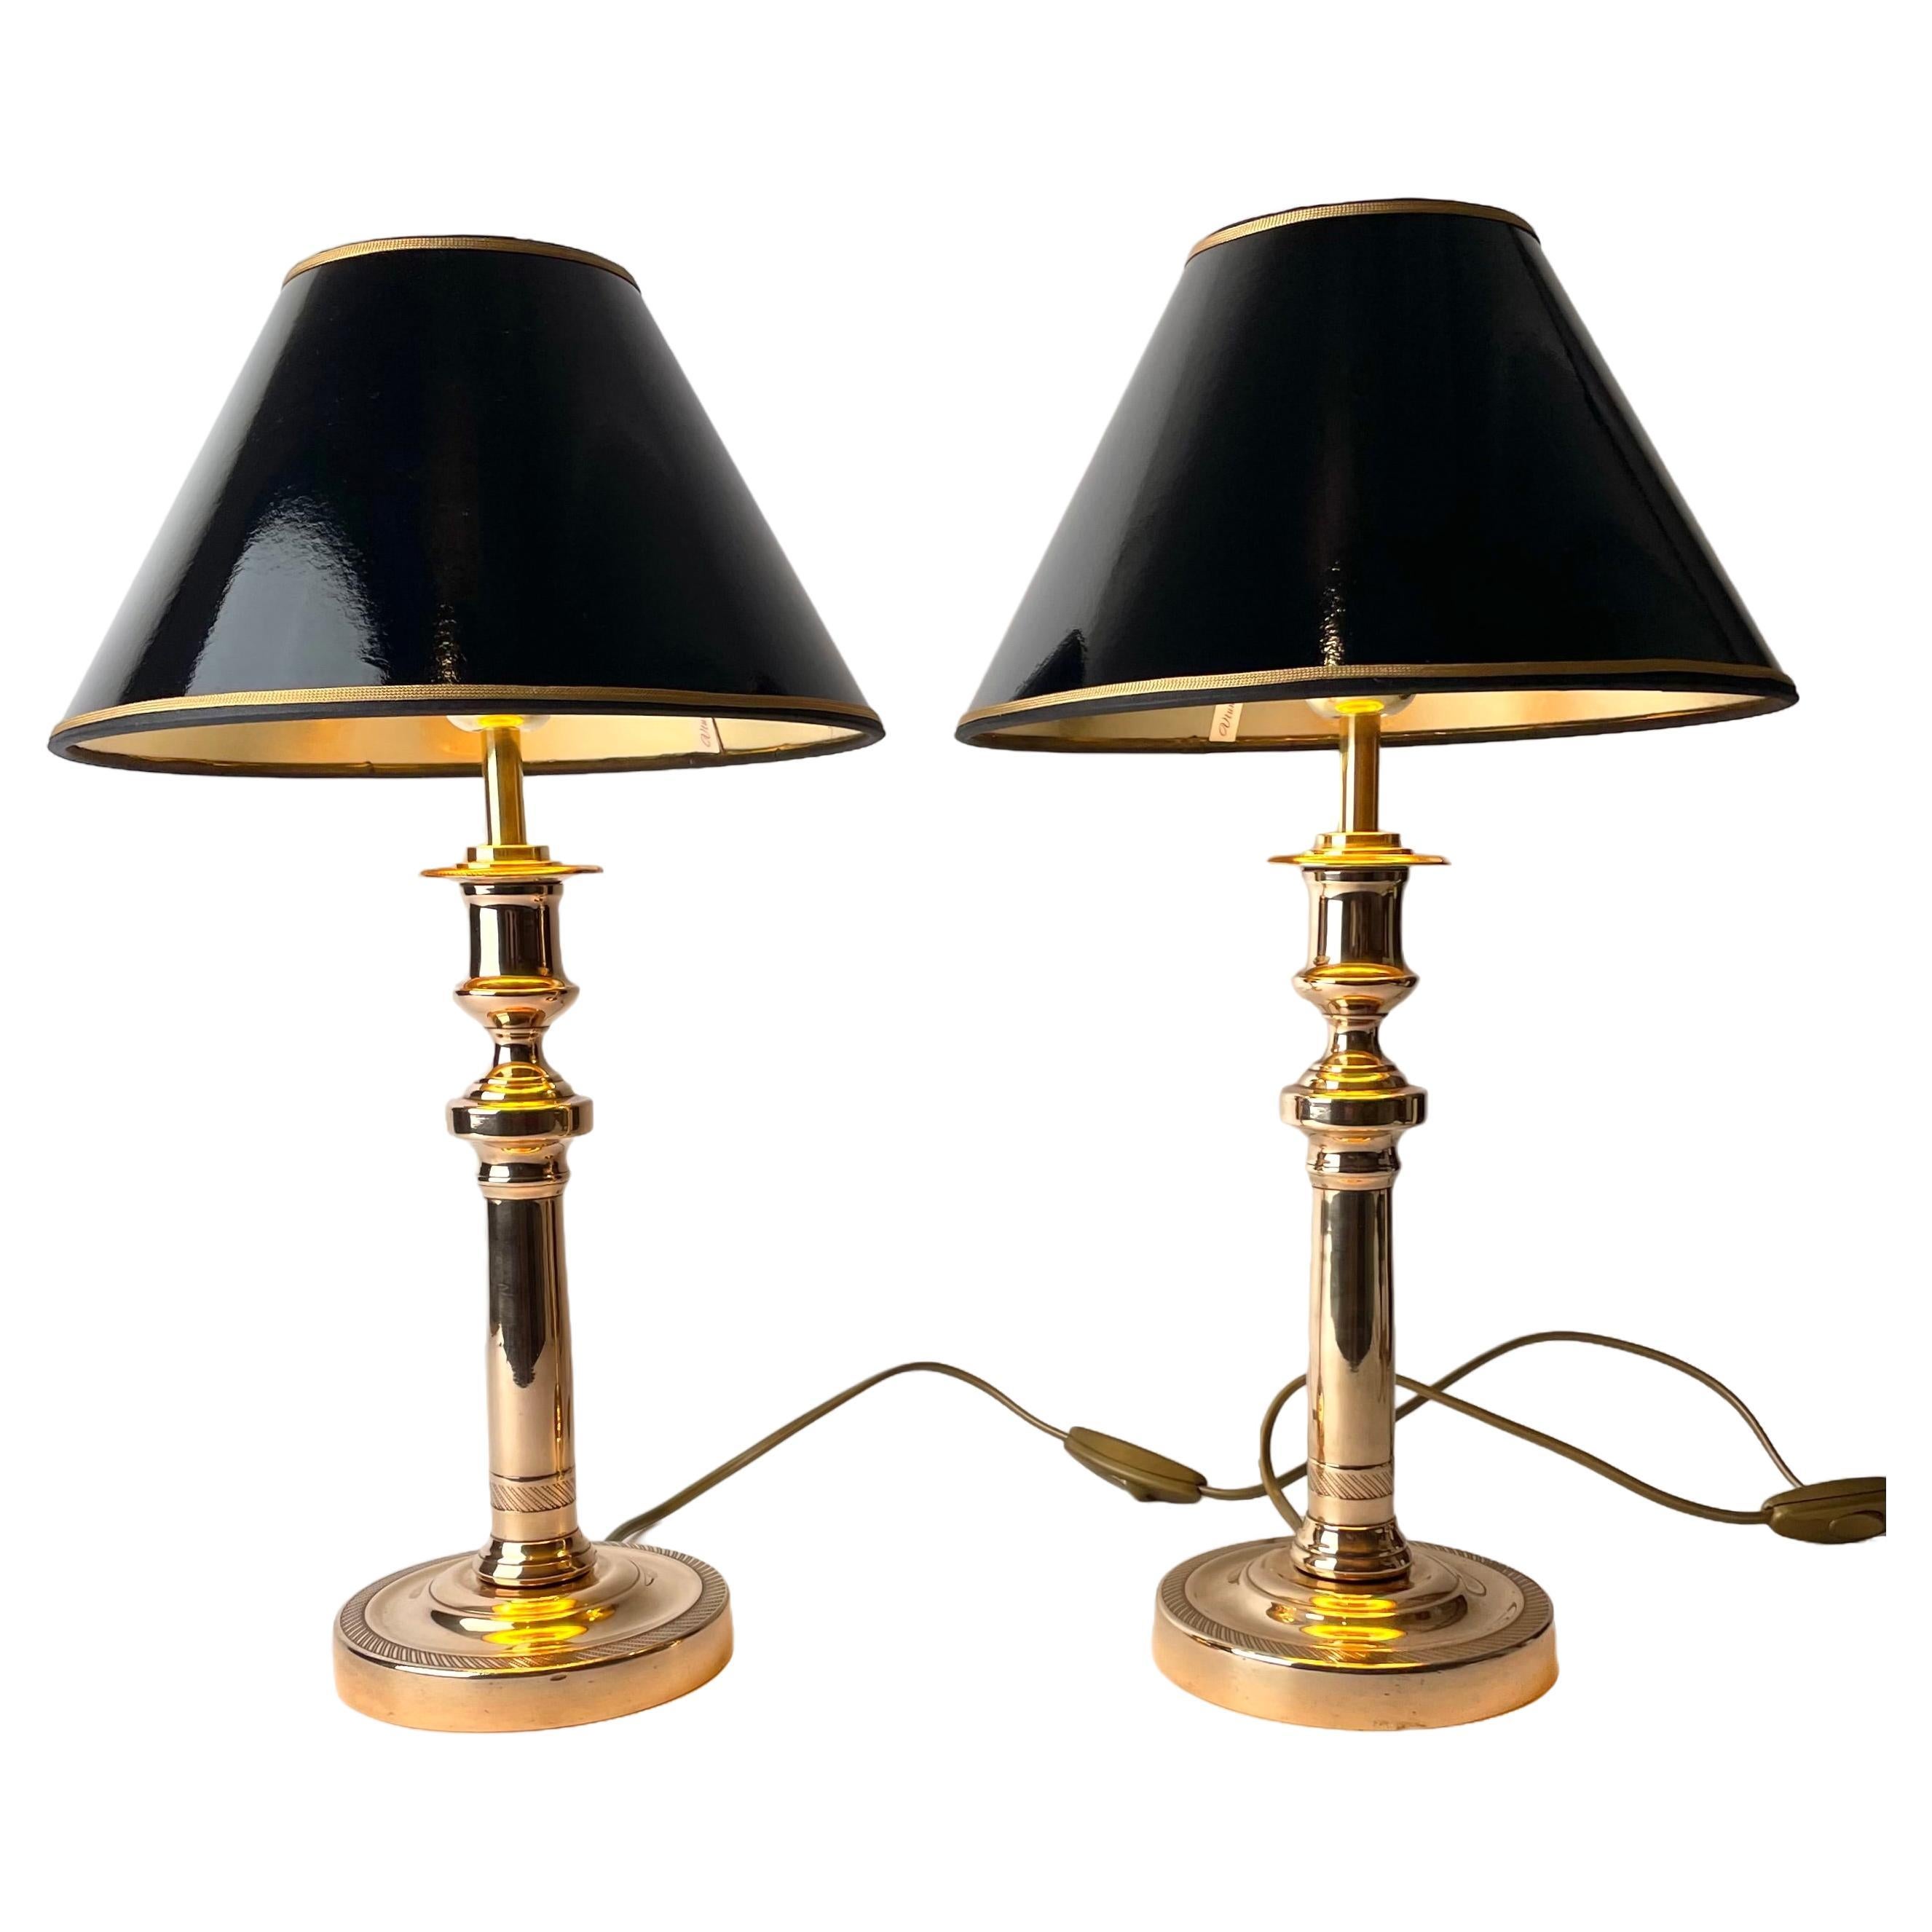 Magnifique paire de lampes de table Empire, chandeliers d'origine des années 1820